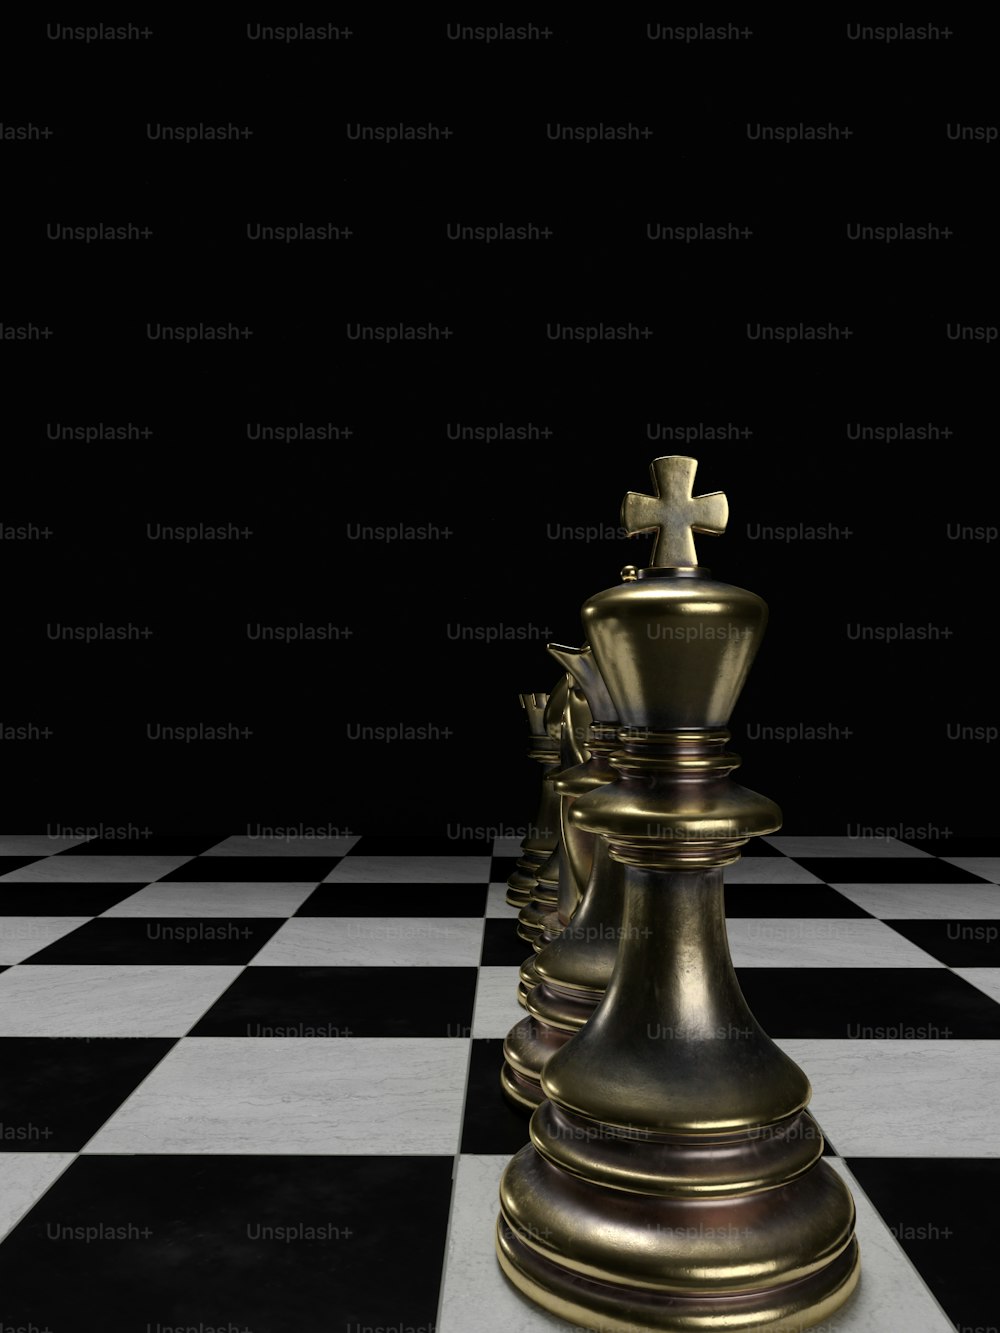 Foto Um close up de uma pessoa jogando um jogo de xadrez – Imagem de Jogos  no Unsplash